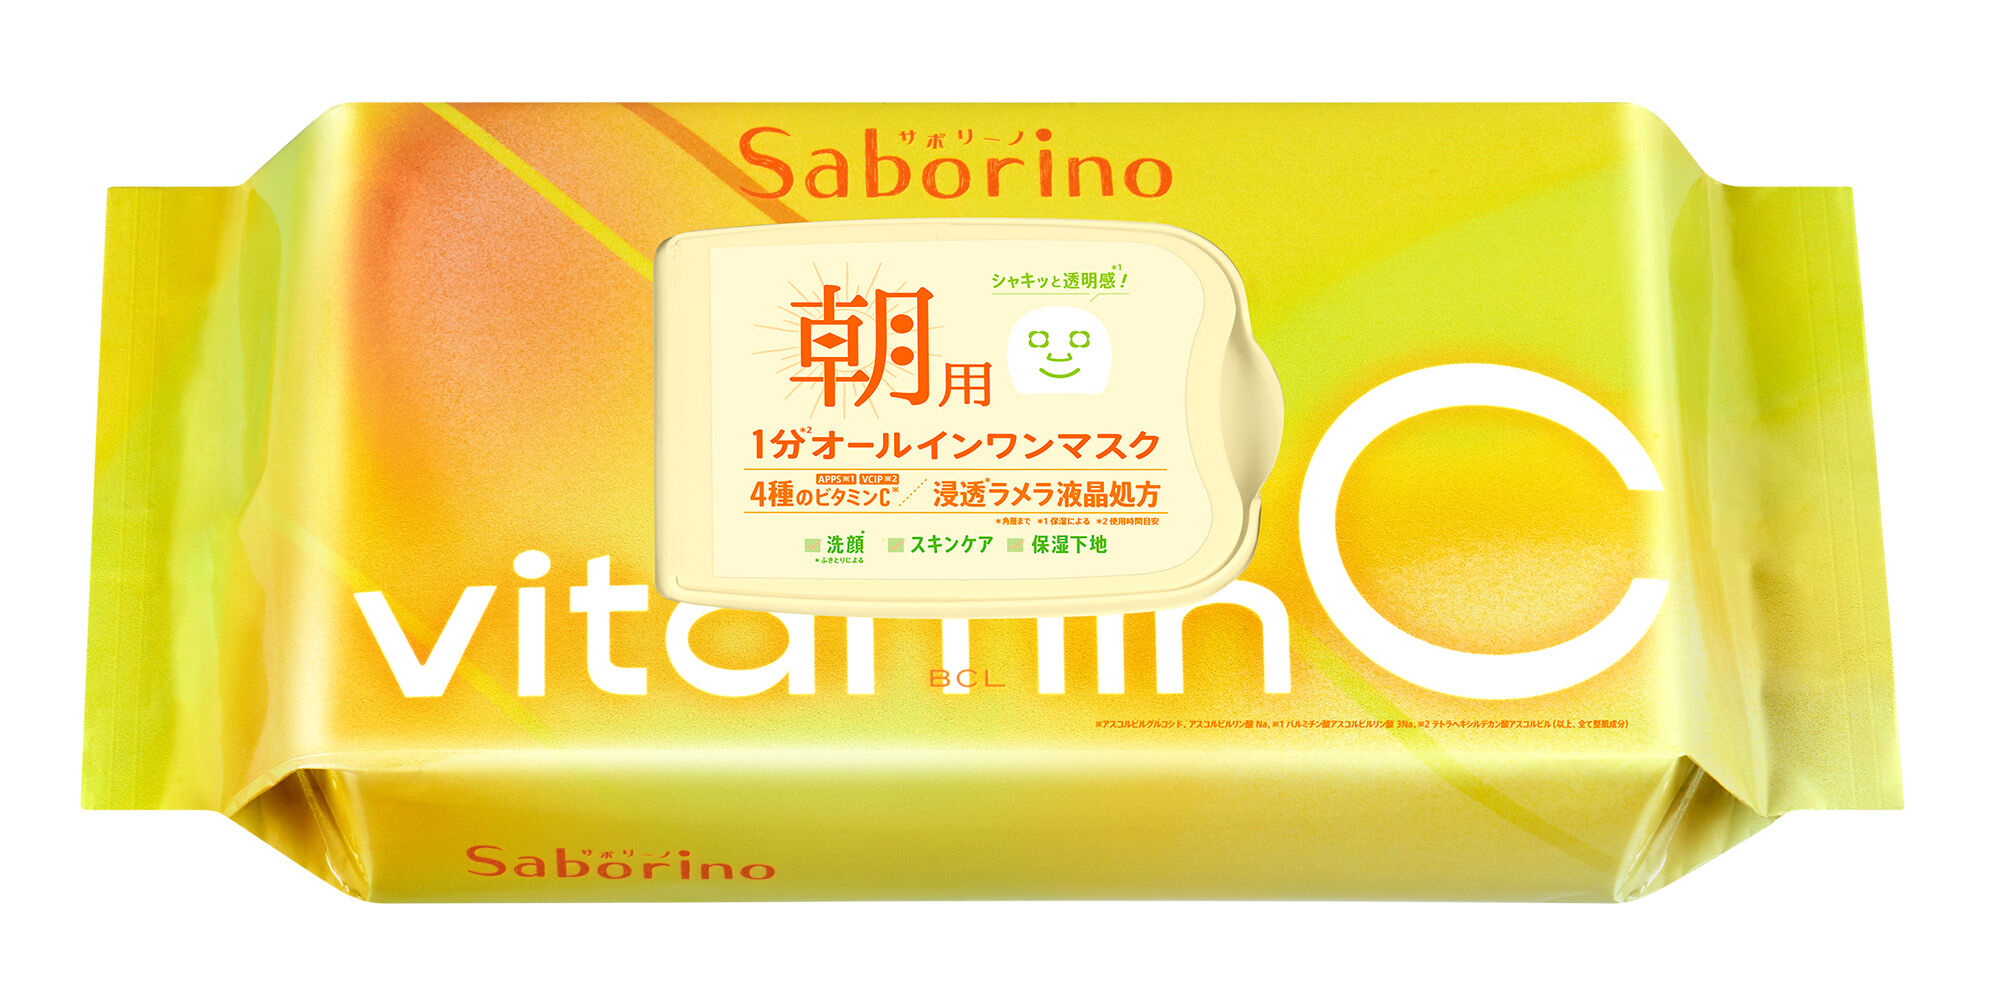 Утренняя маска для лица с витамином с Bcl Saborino, 30 шт/1 упаковка